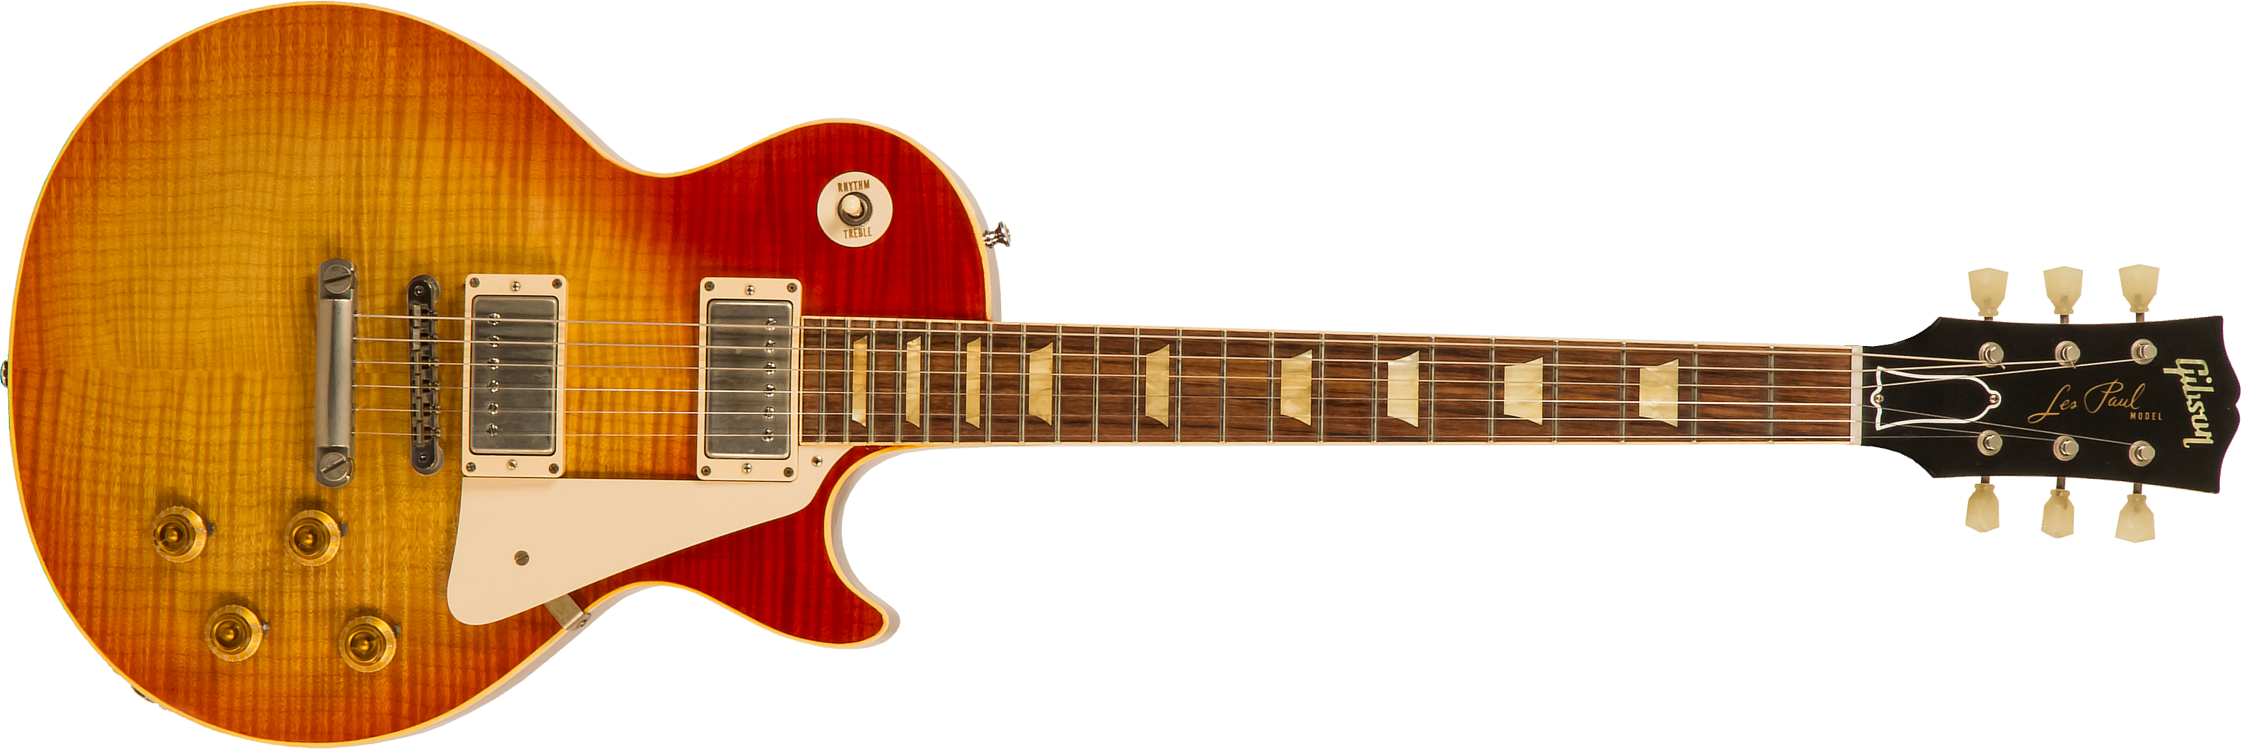 Gibson Custom Shop Les Paul Les Paul 1959 Southern Rock Tribute 2h Rw #srt0021 - Vos Reverse Burst - Single cut electric guitar - Main picture